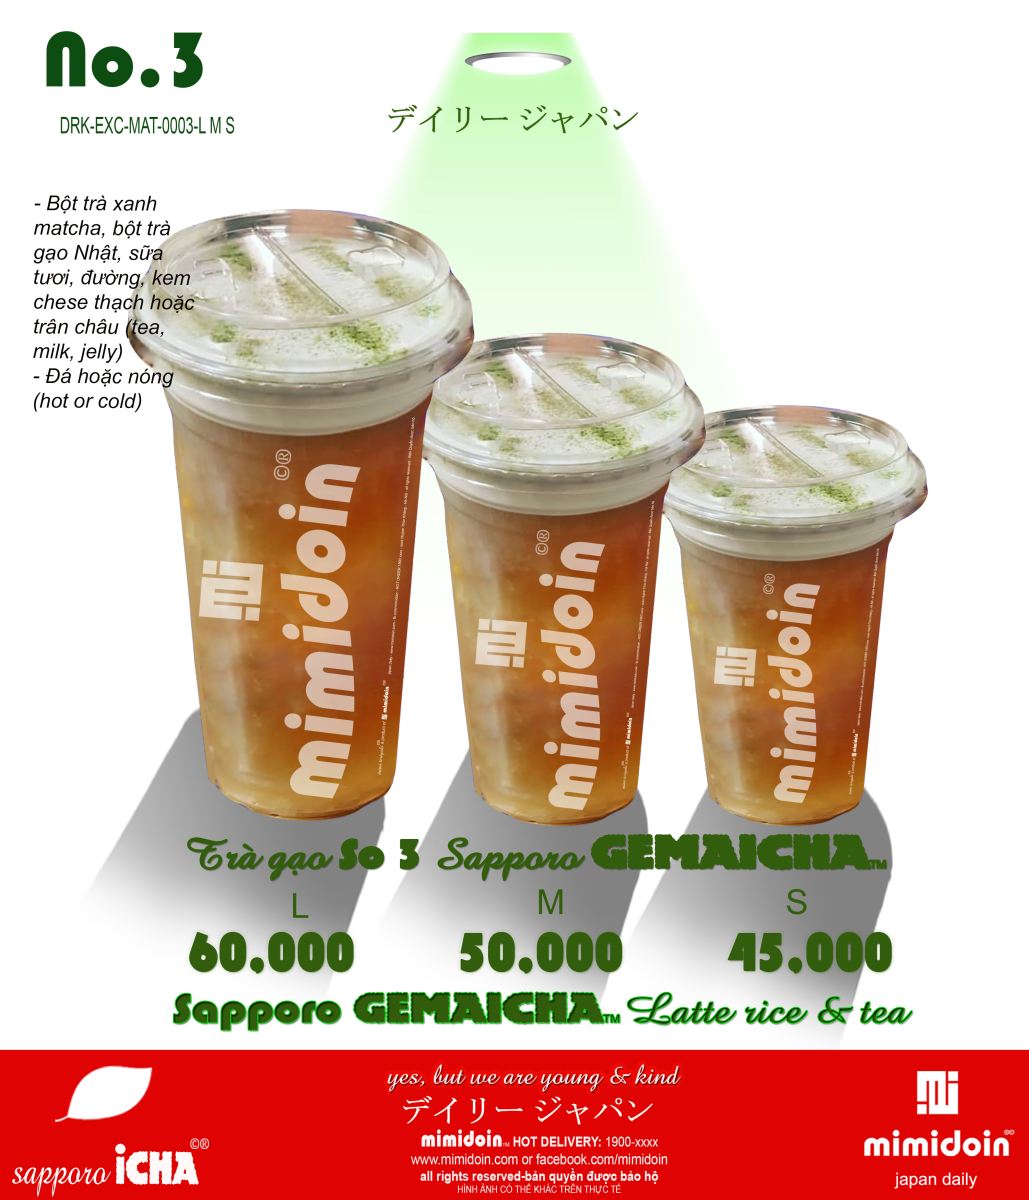 DRK-EXC-MAT-0003-Rice & Tea  Sapporo Genmaicha 3 cup